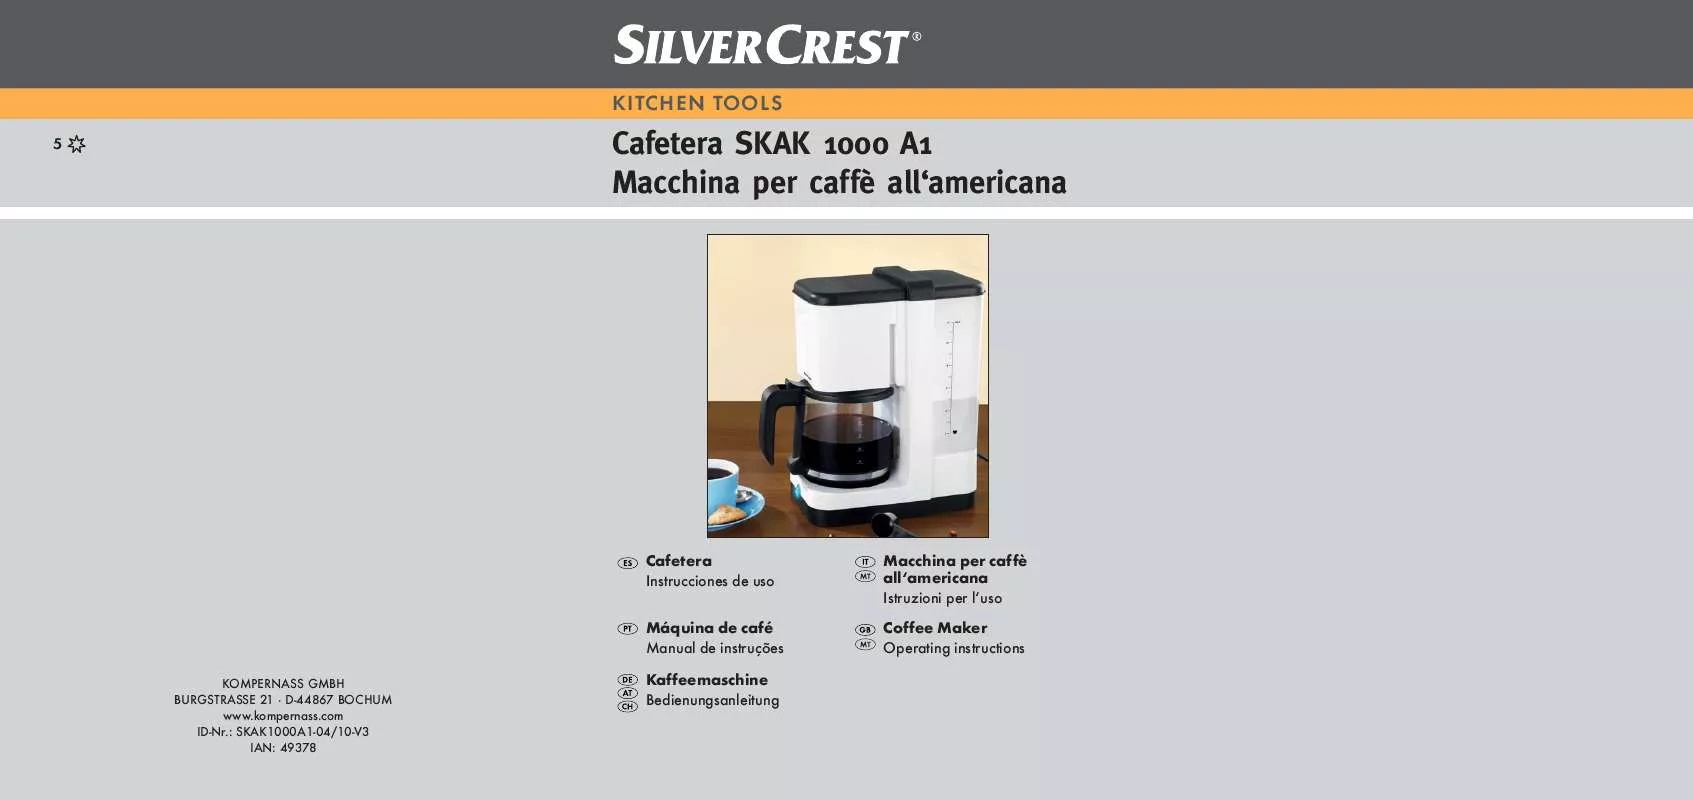 Mode d'emploi SILVERCREST SKAK 1000 A1 COFFEE MAKER